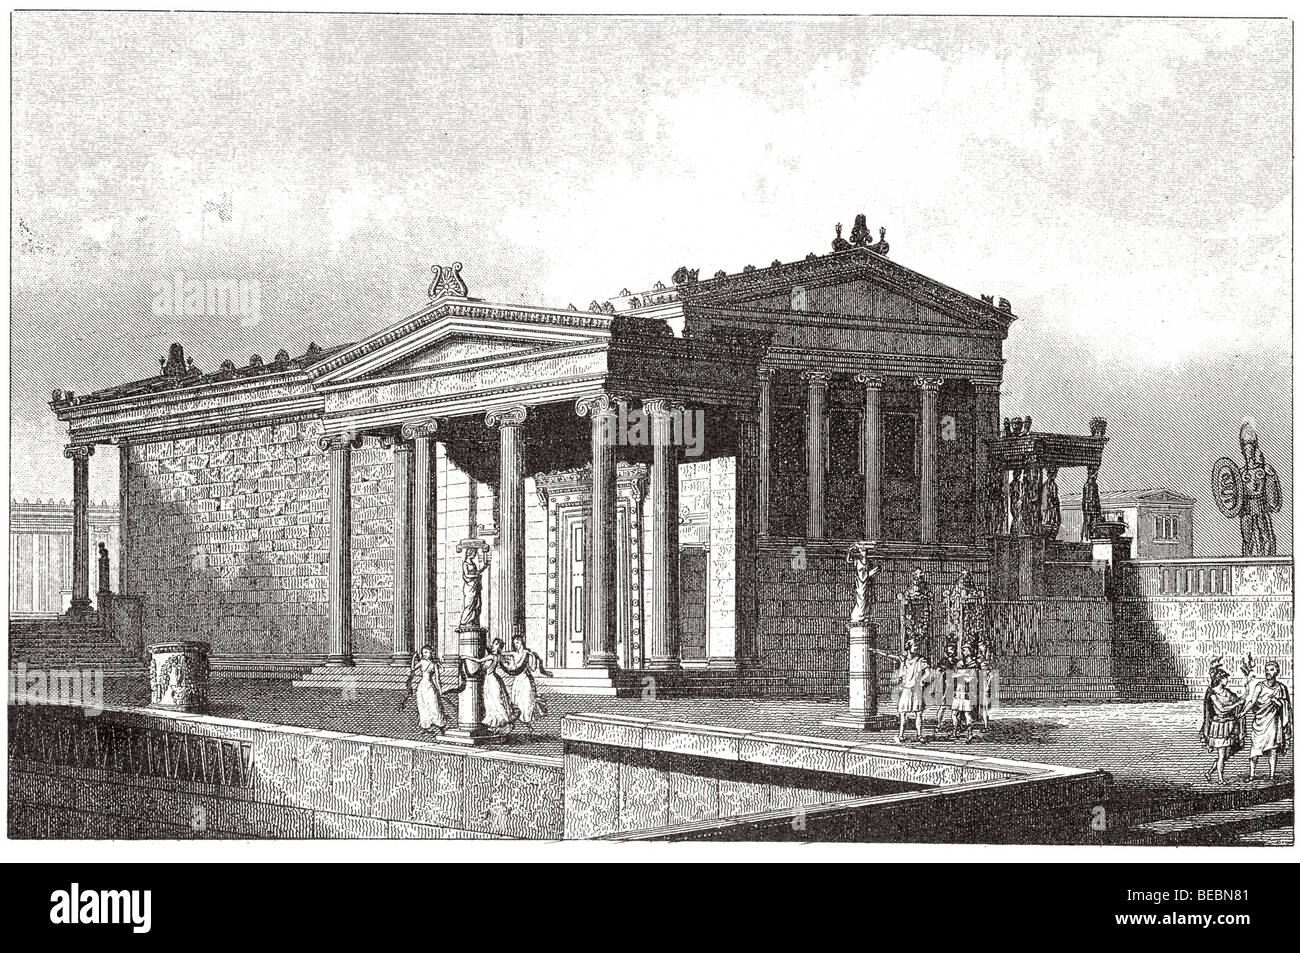 Templo de Minerva polias erechtheus y el hall de la ninfa pandrosos en Atenas Foto de stock